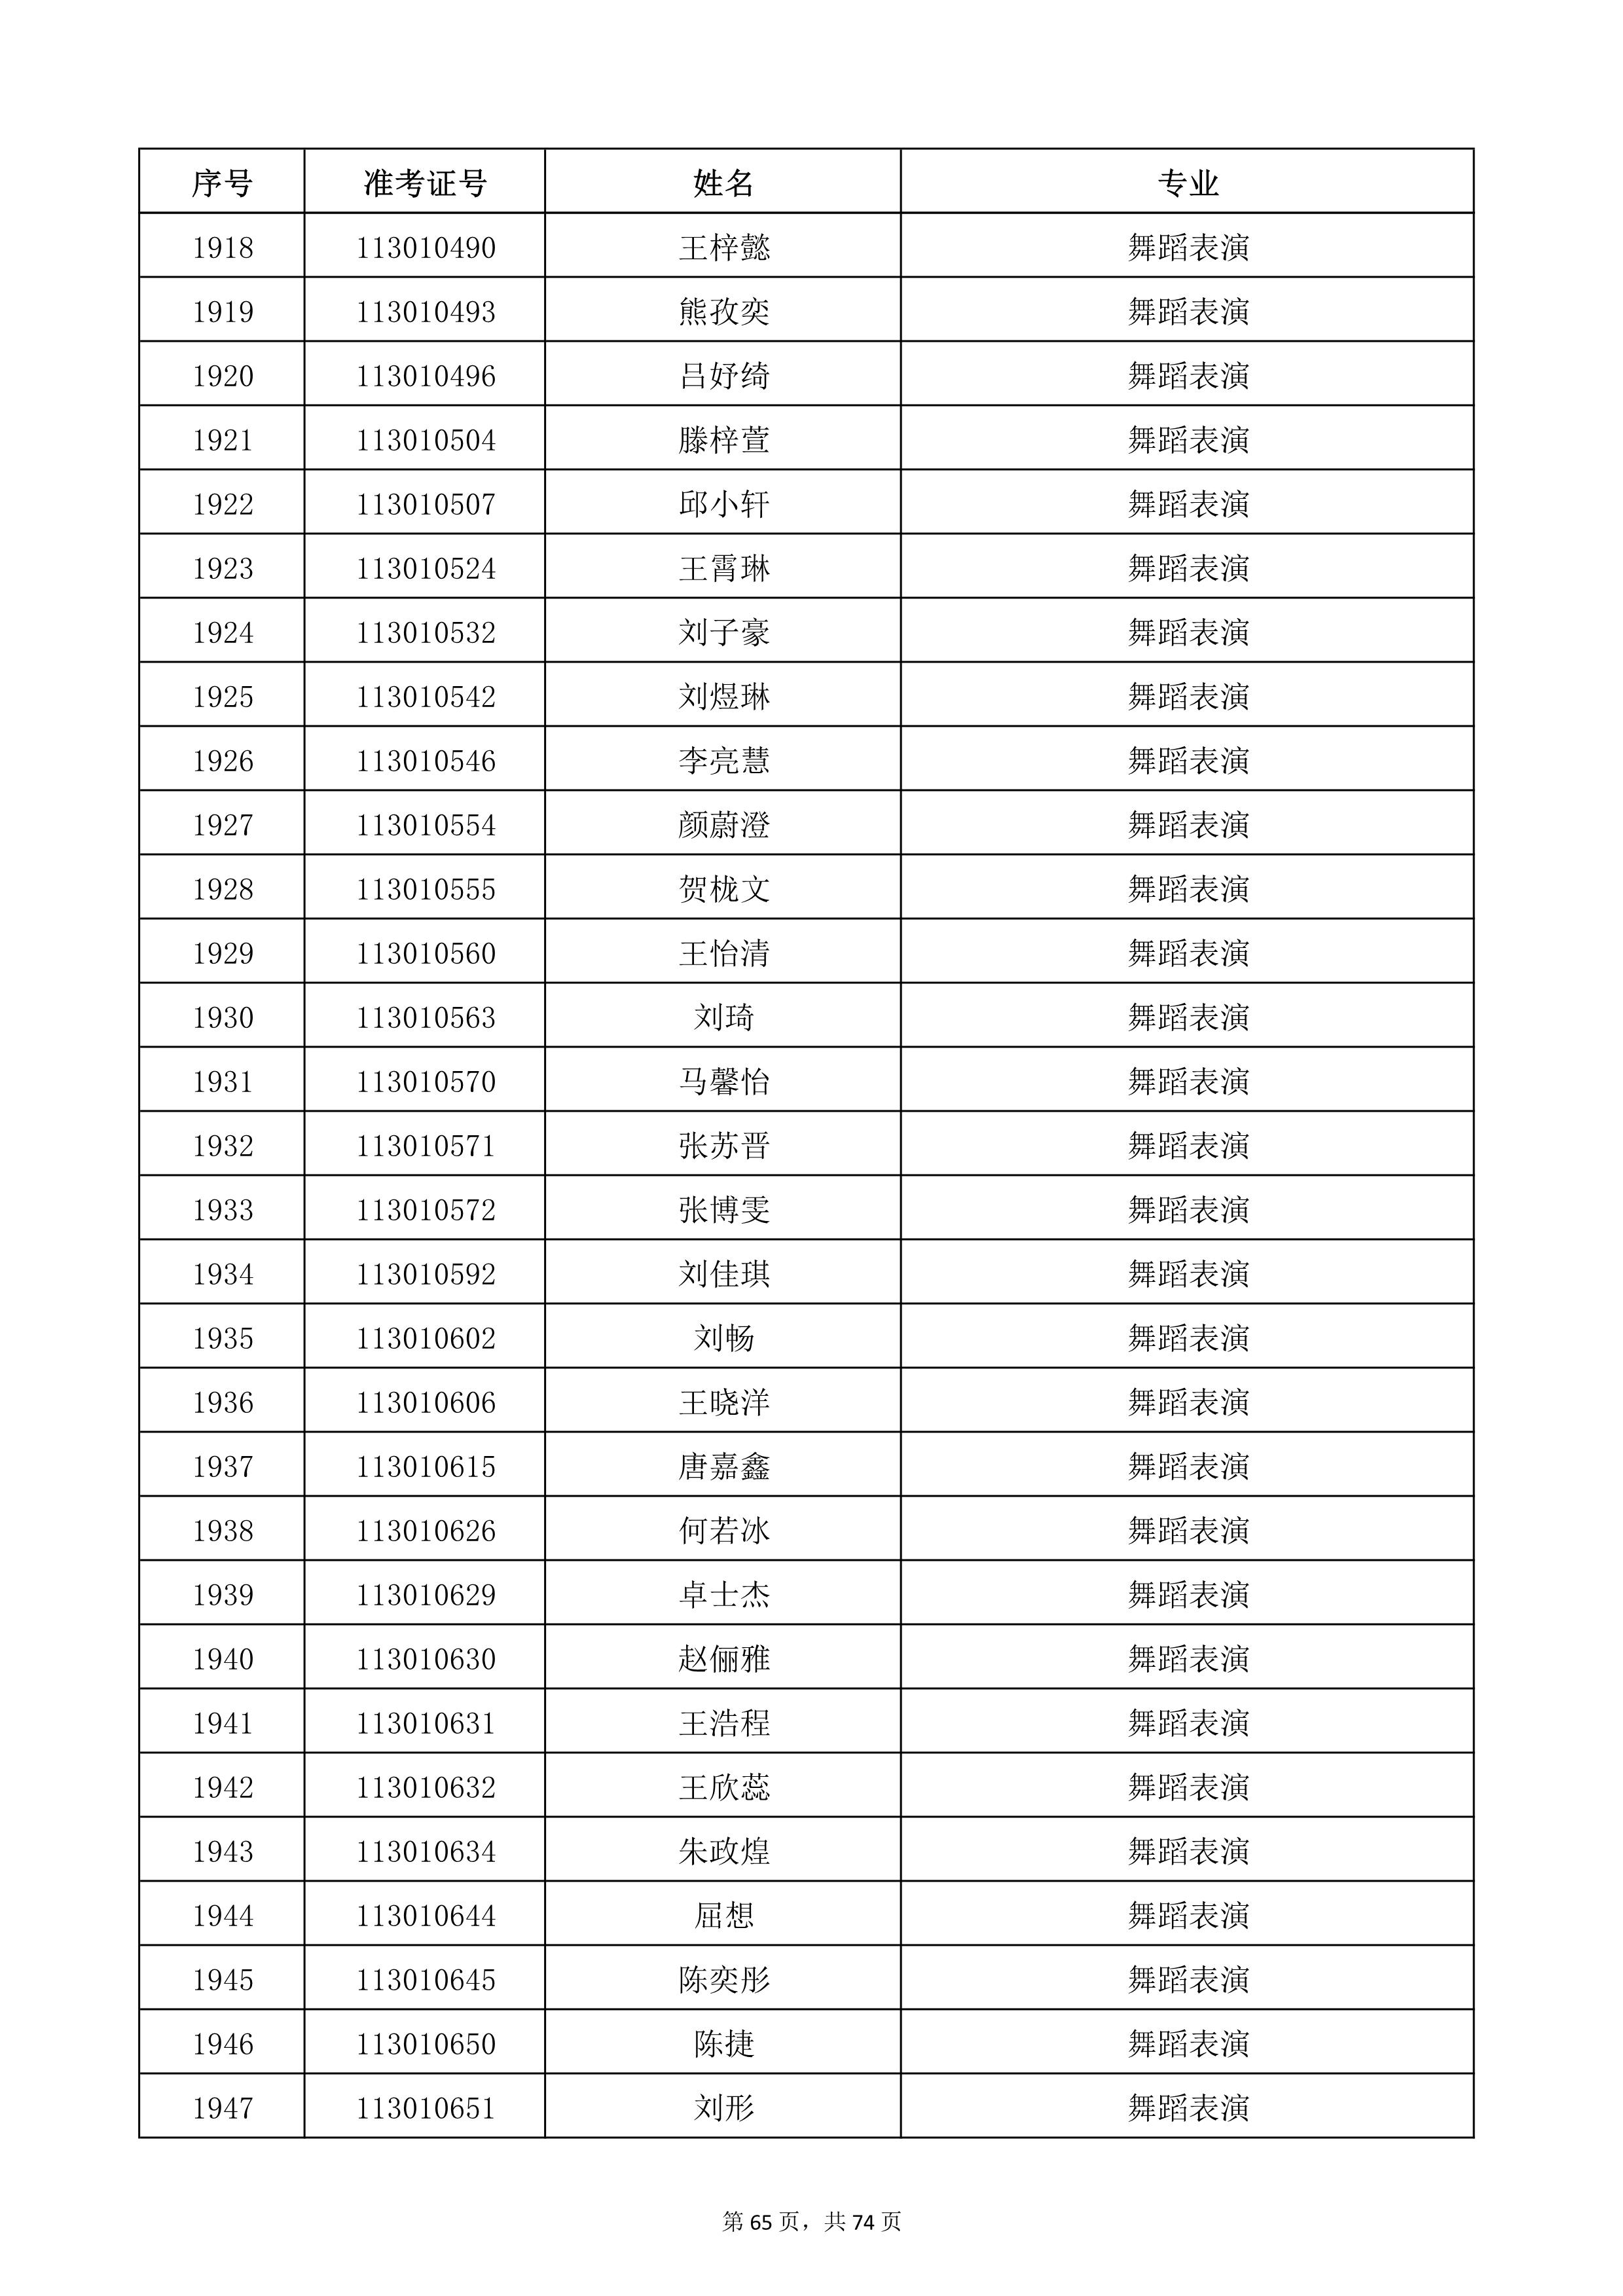 天津音乐学院2022年本科招生考试复试名单_65.jpg